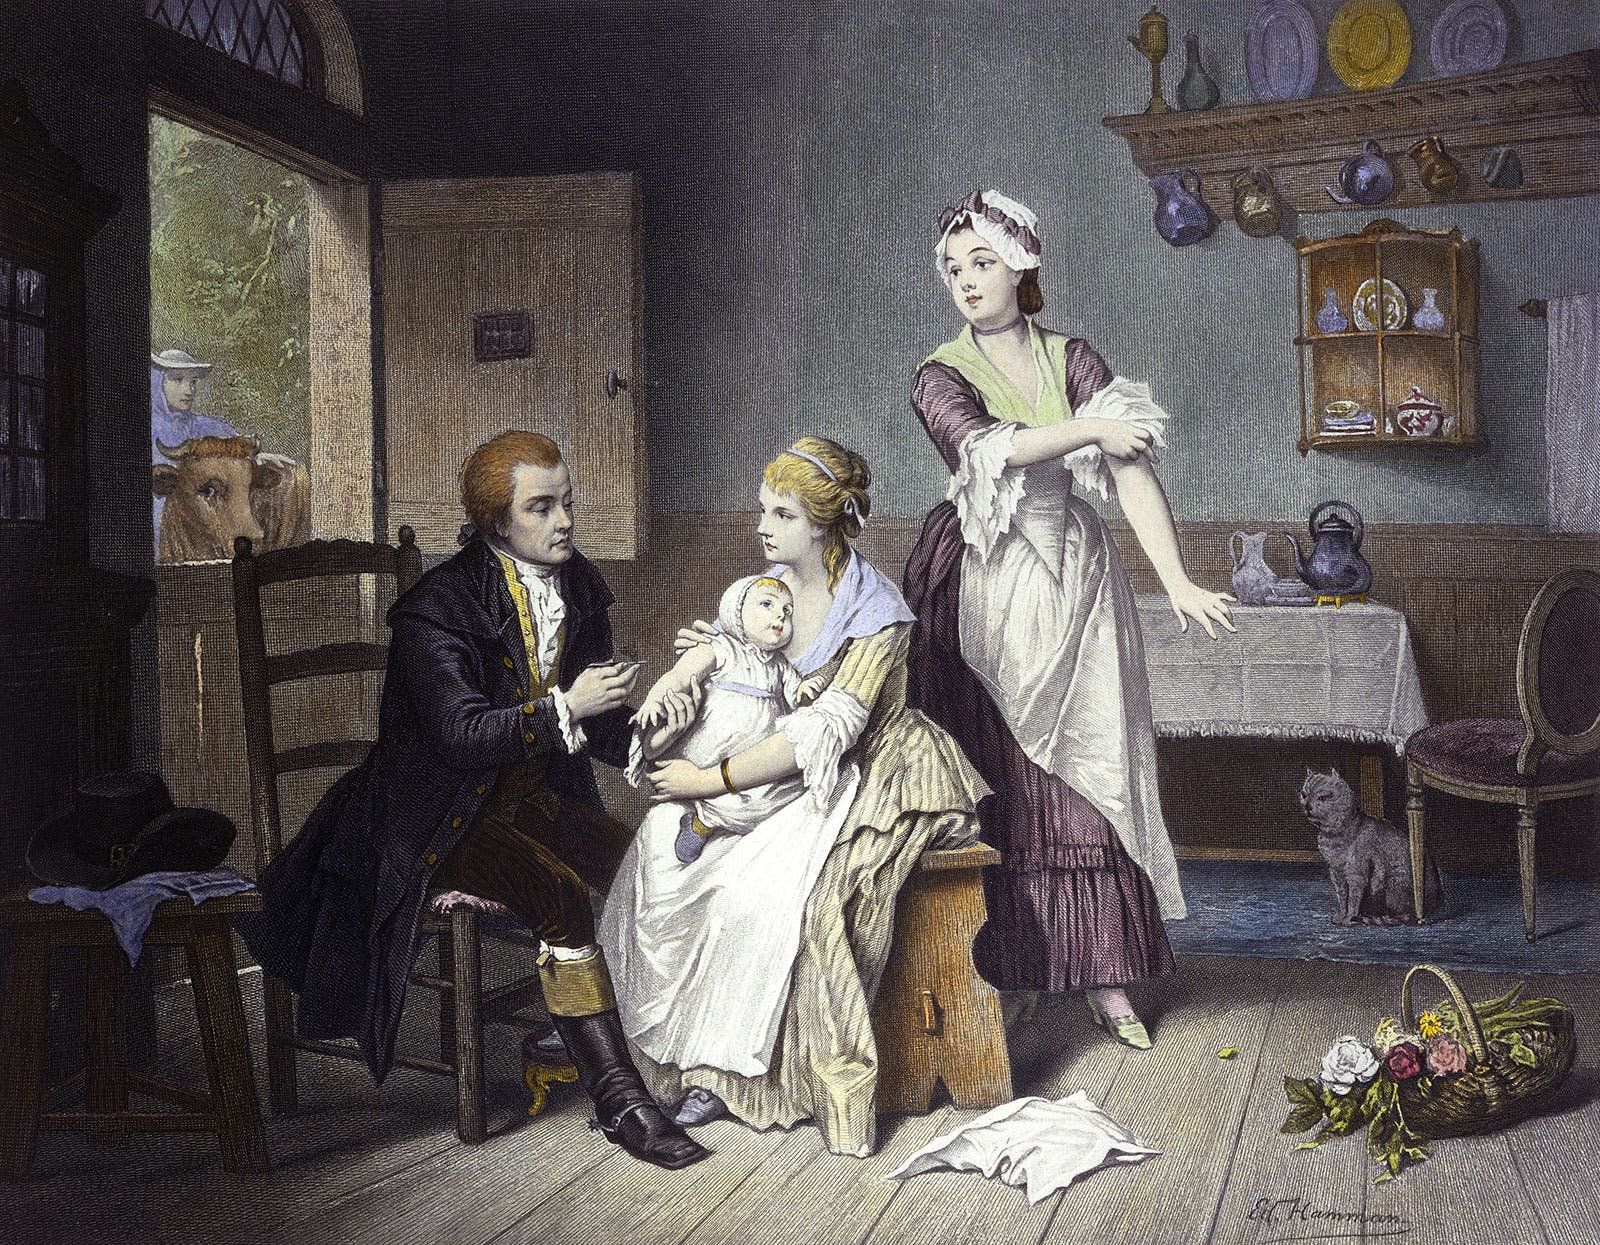  لوحة تجسد عملية التطعيم التي قادها الطبيب الإنجليزي إدوارد جينر